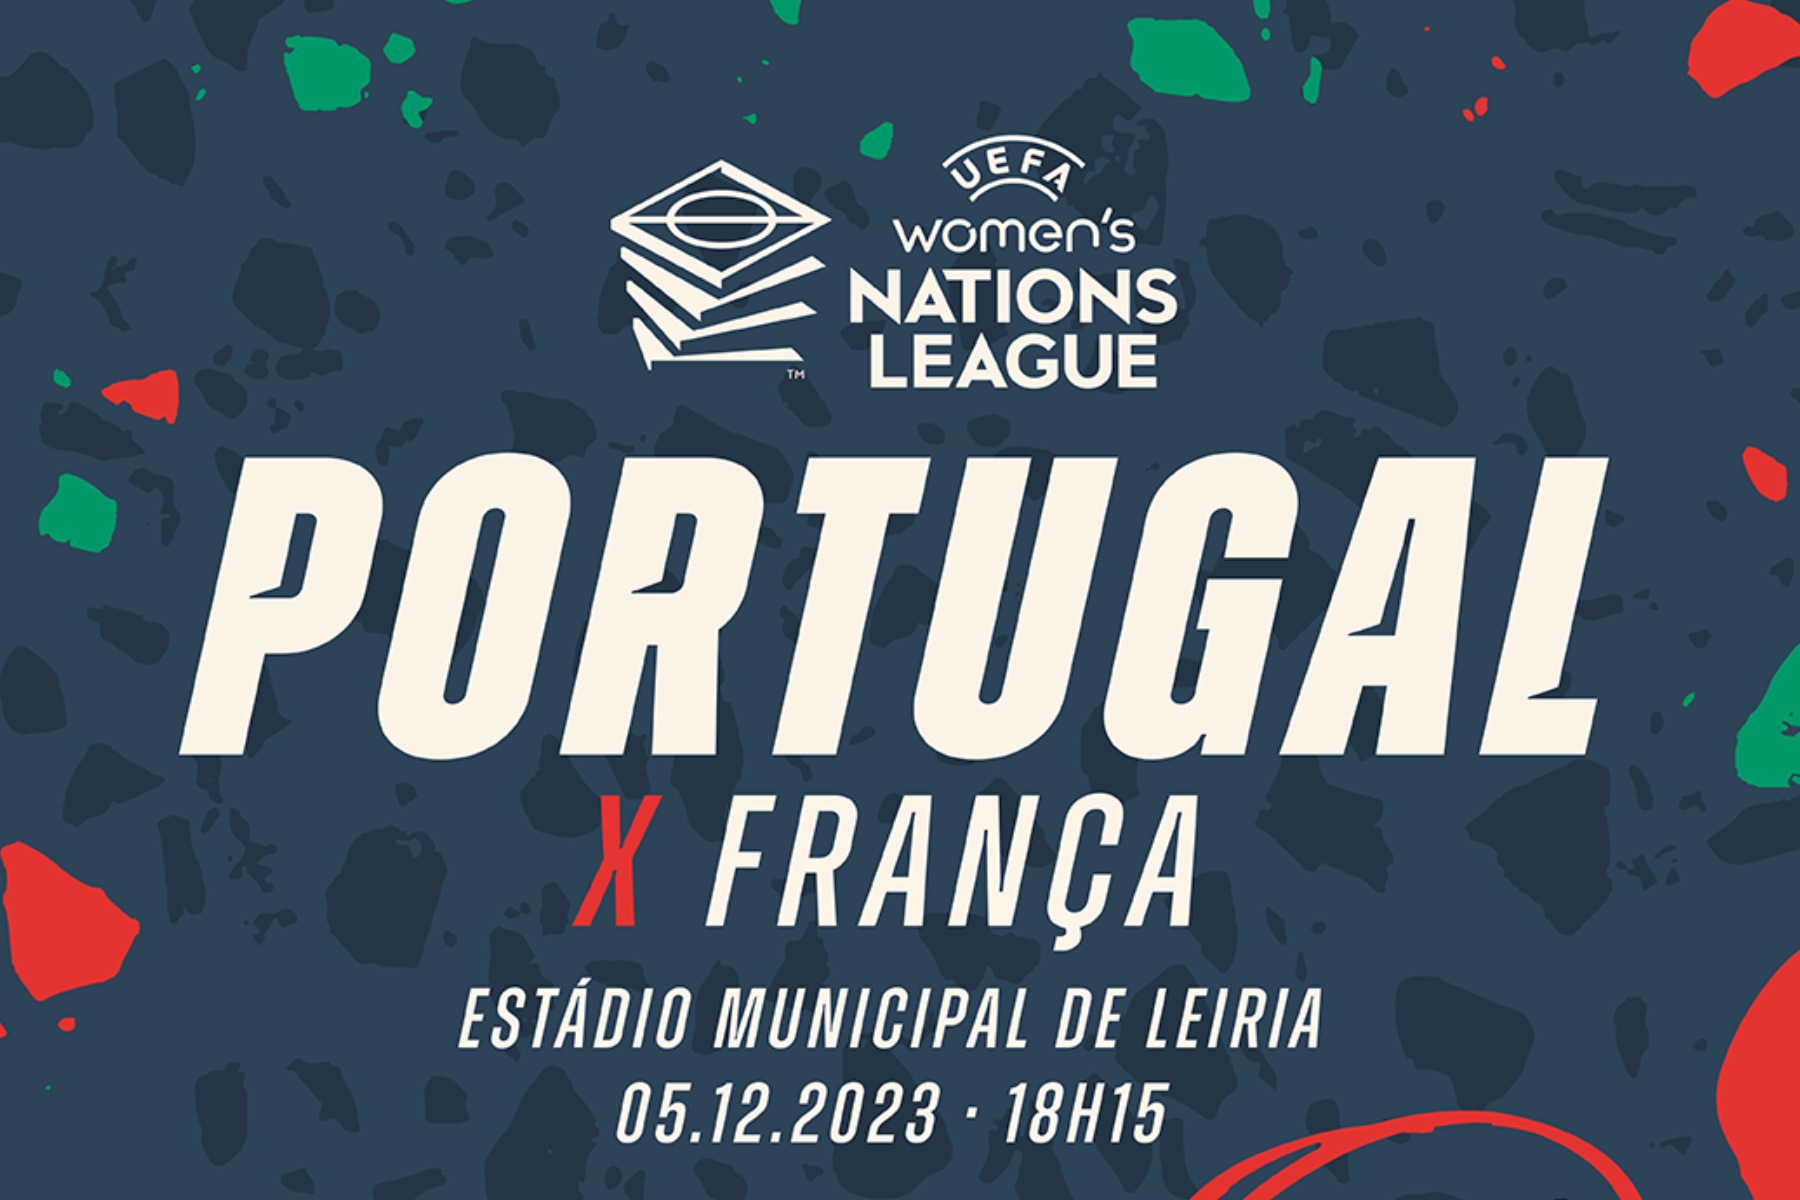 PORTUGUÊS 3ª DIVISAO 2023/2024: Times, Grupos, Estádios